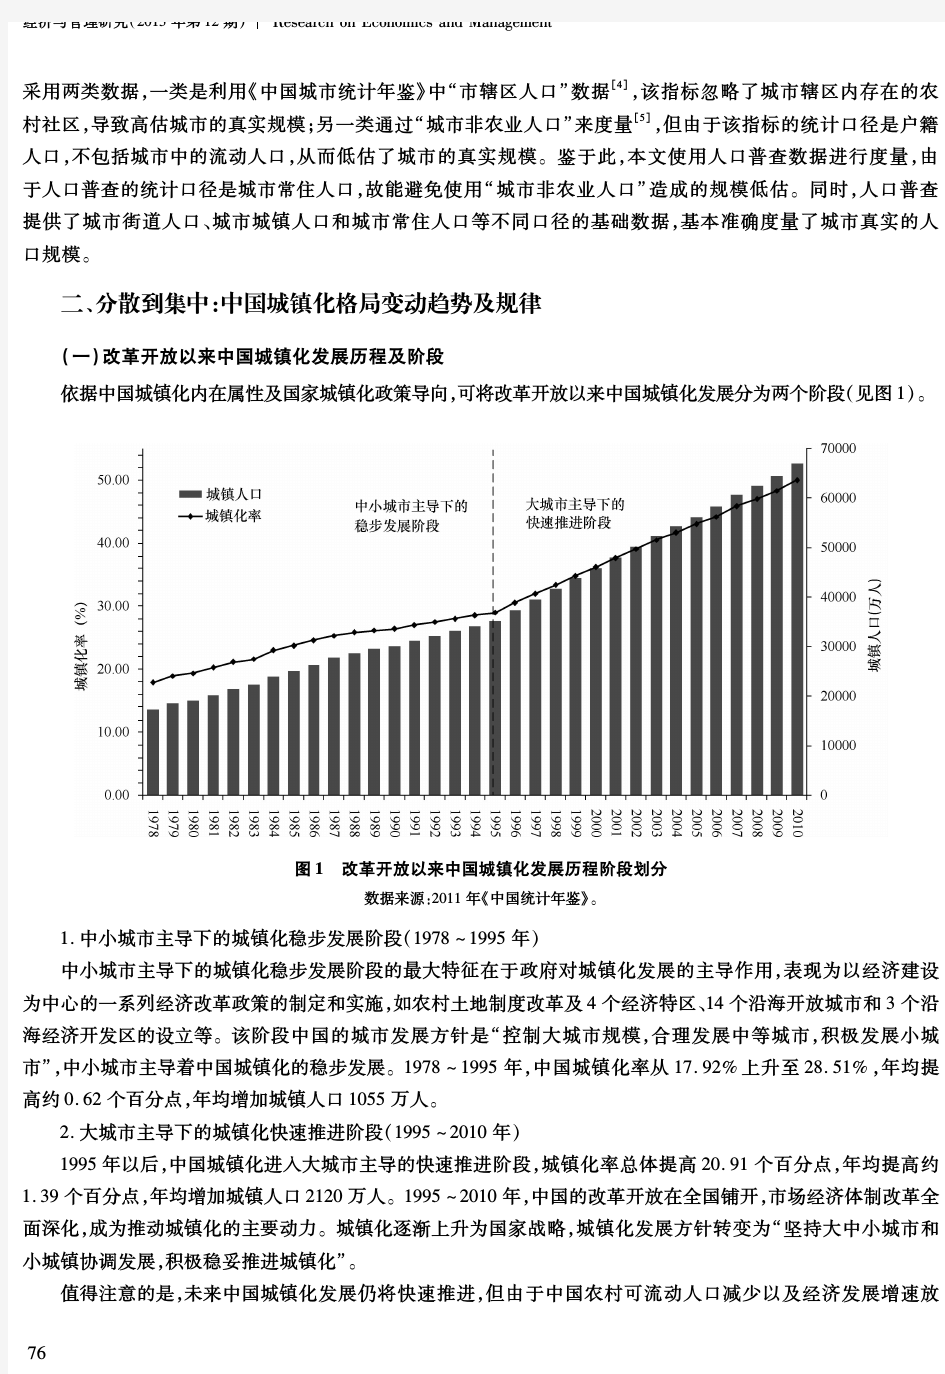 中国人口流动与城镇化格局变动趋势研究